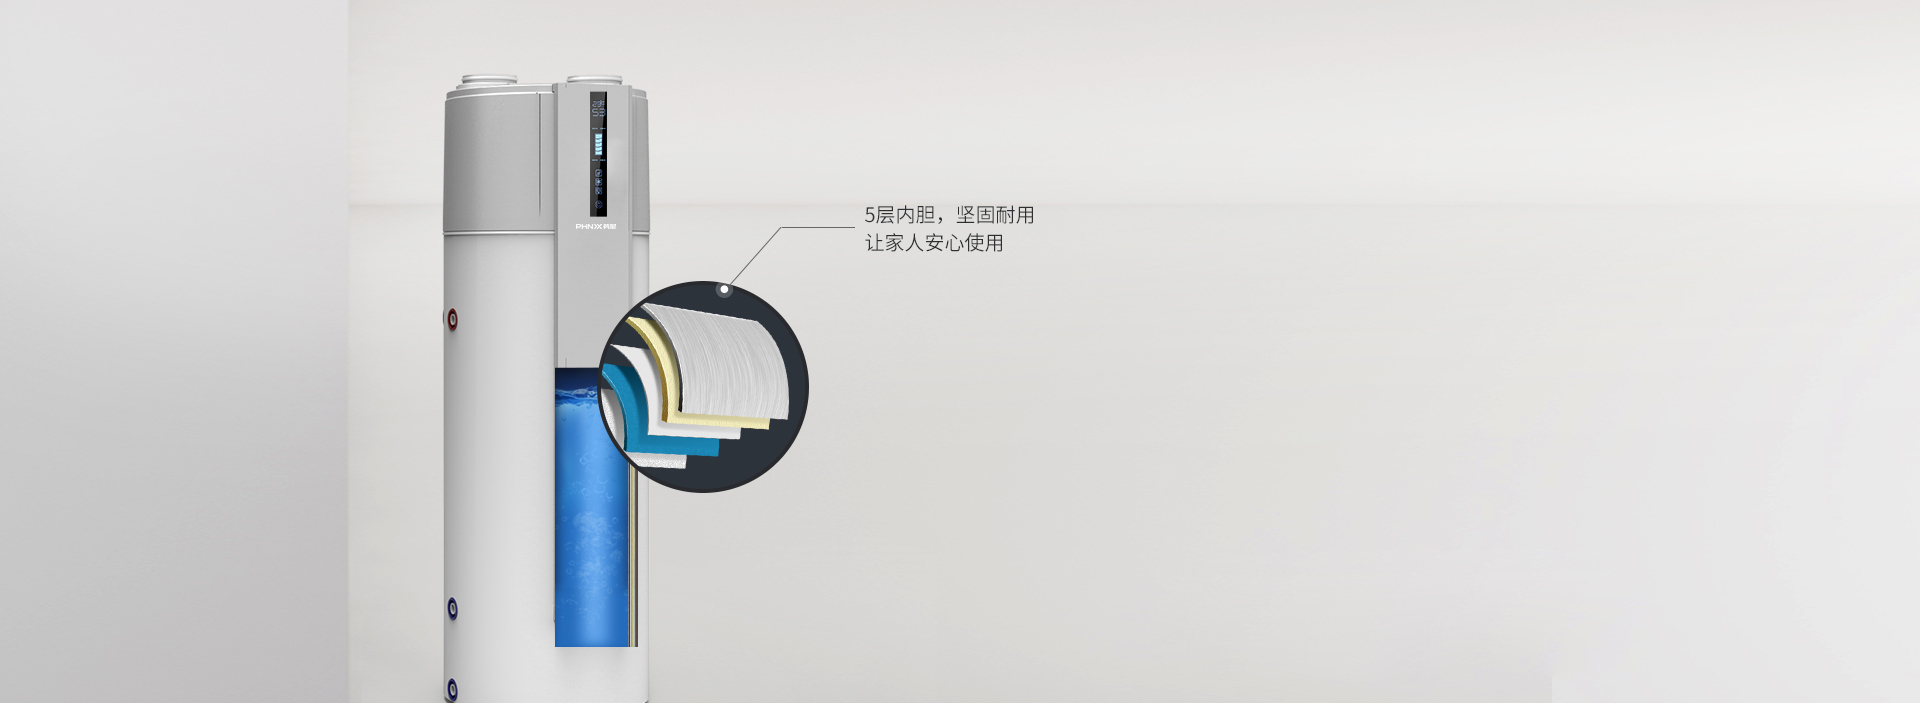 芬尼空气能热水器新尊贵型 200L钛瓷内胆